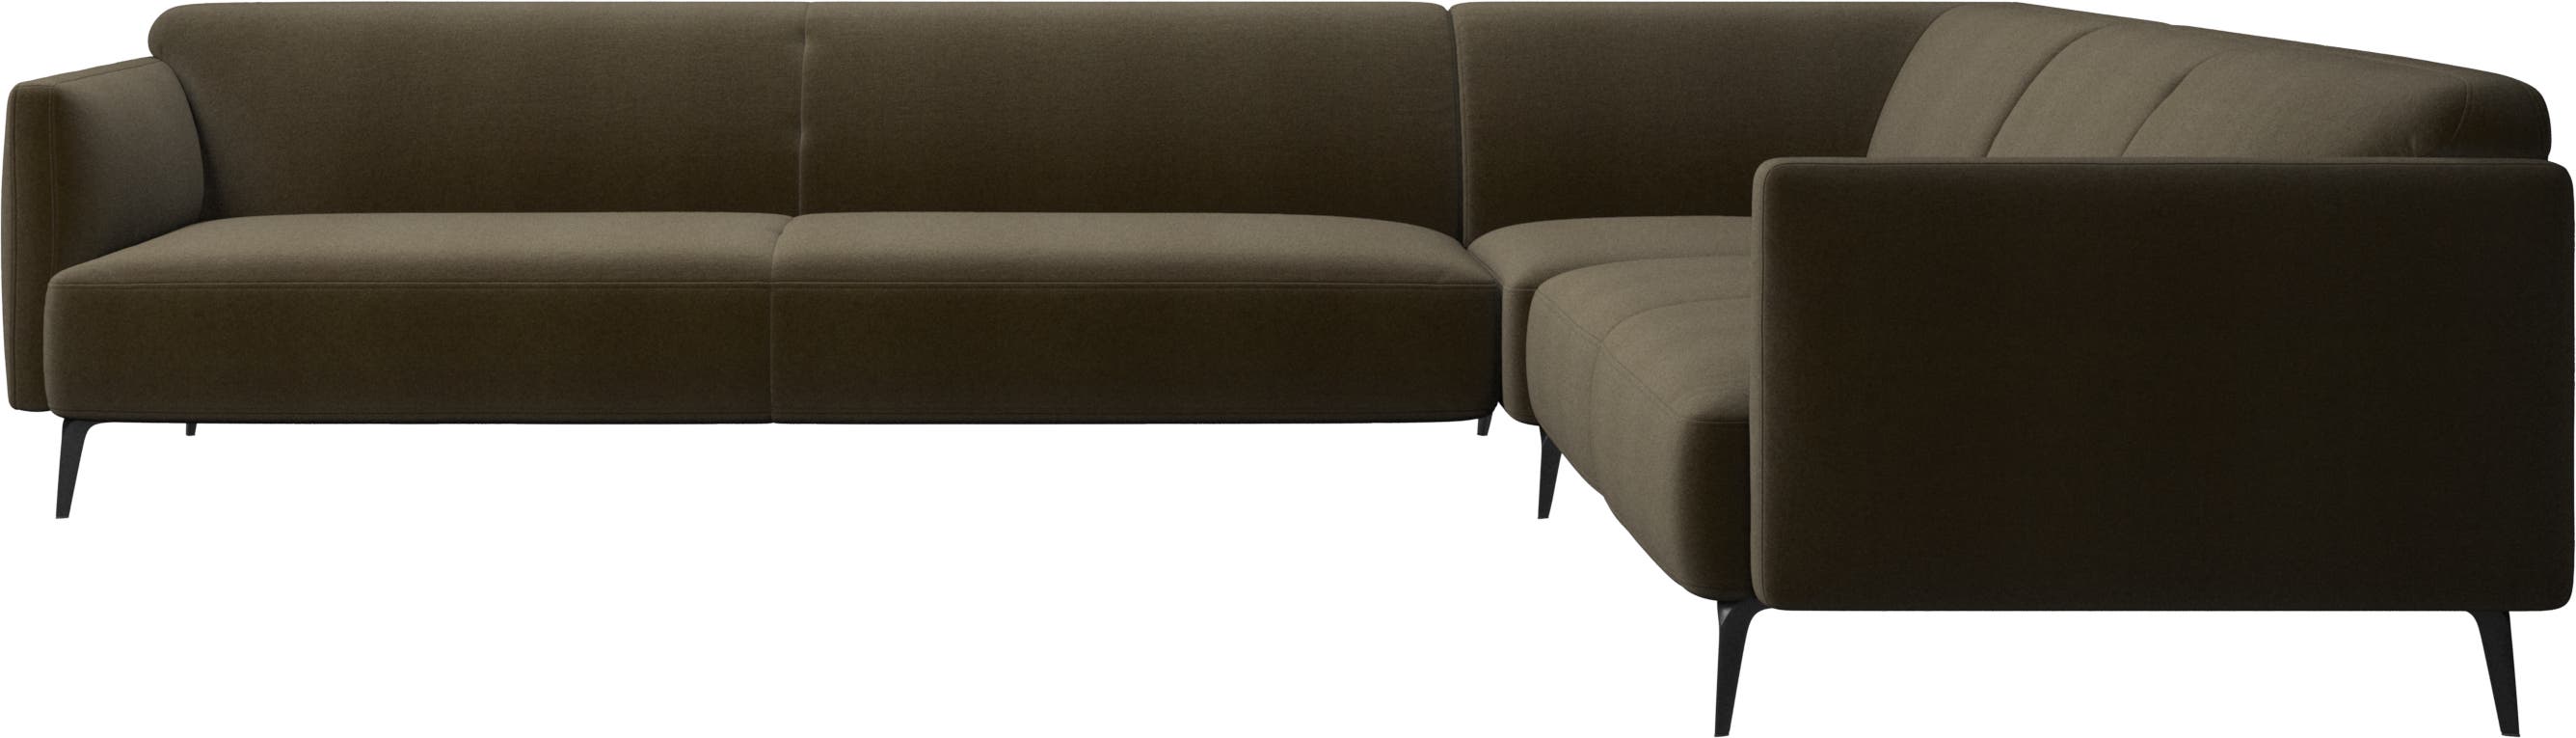 Modena corner sofa